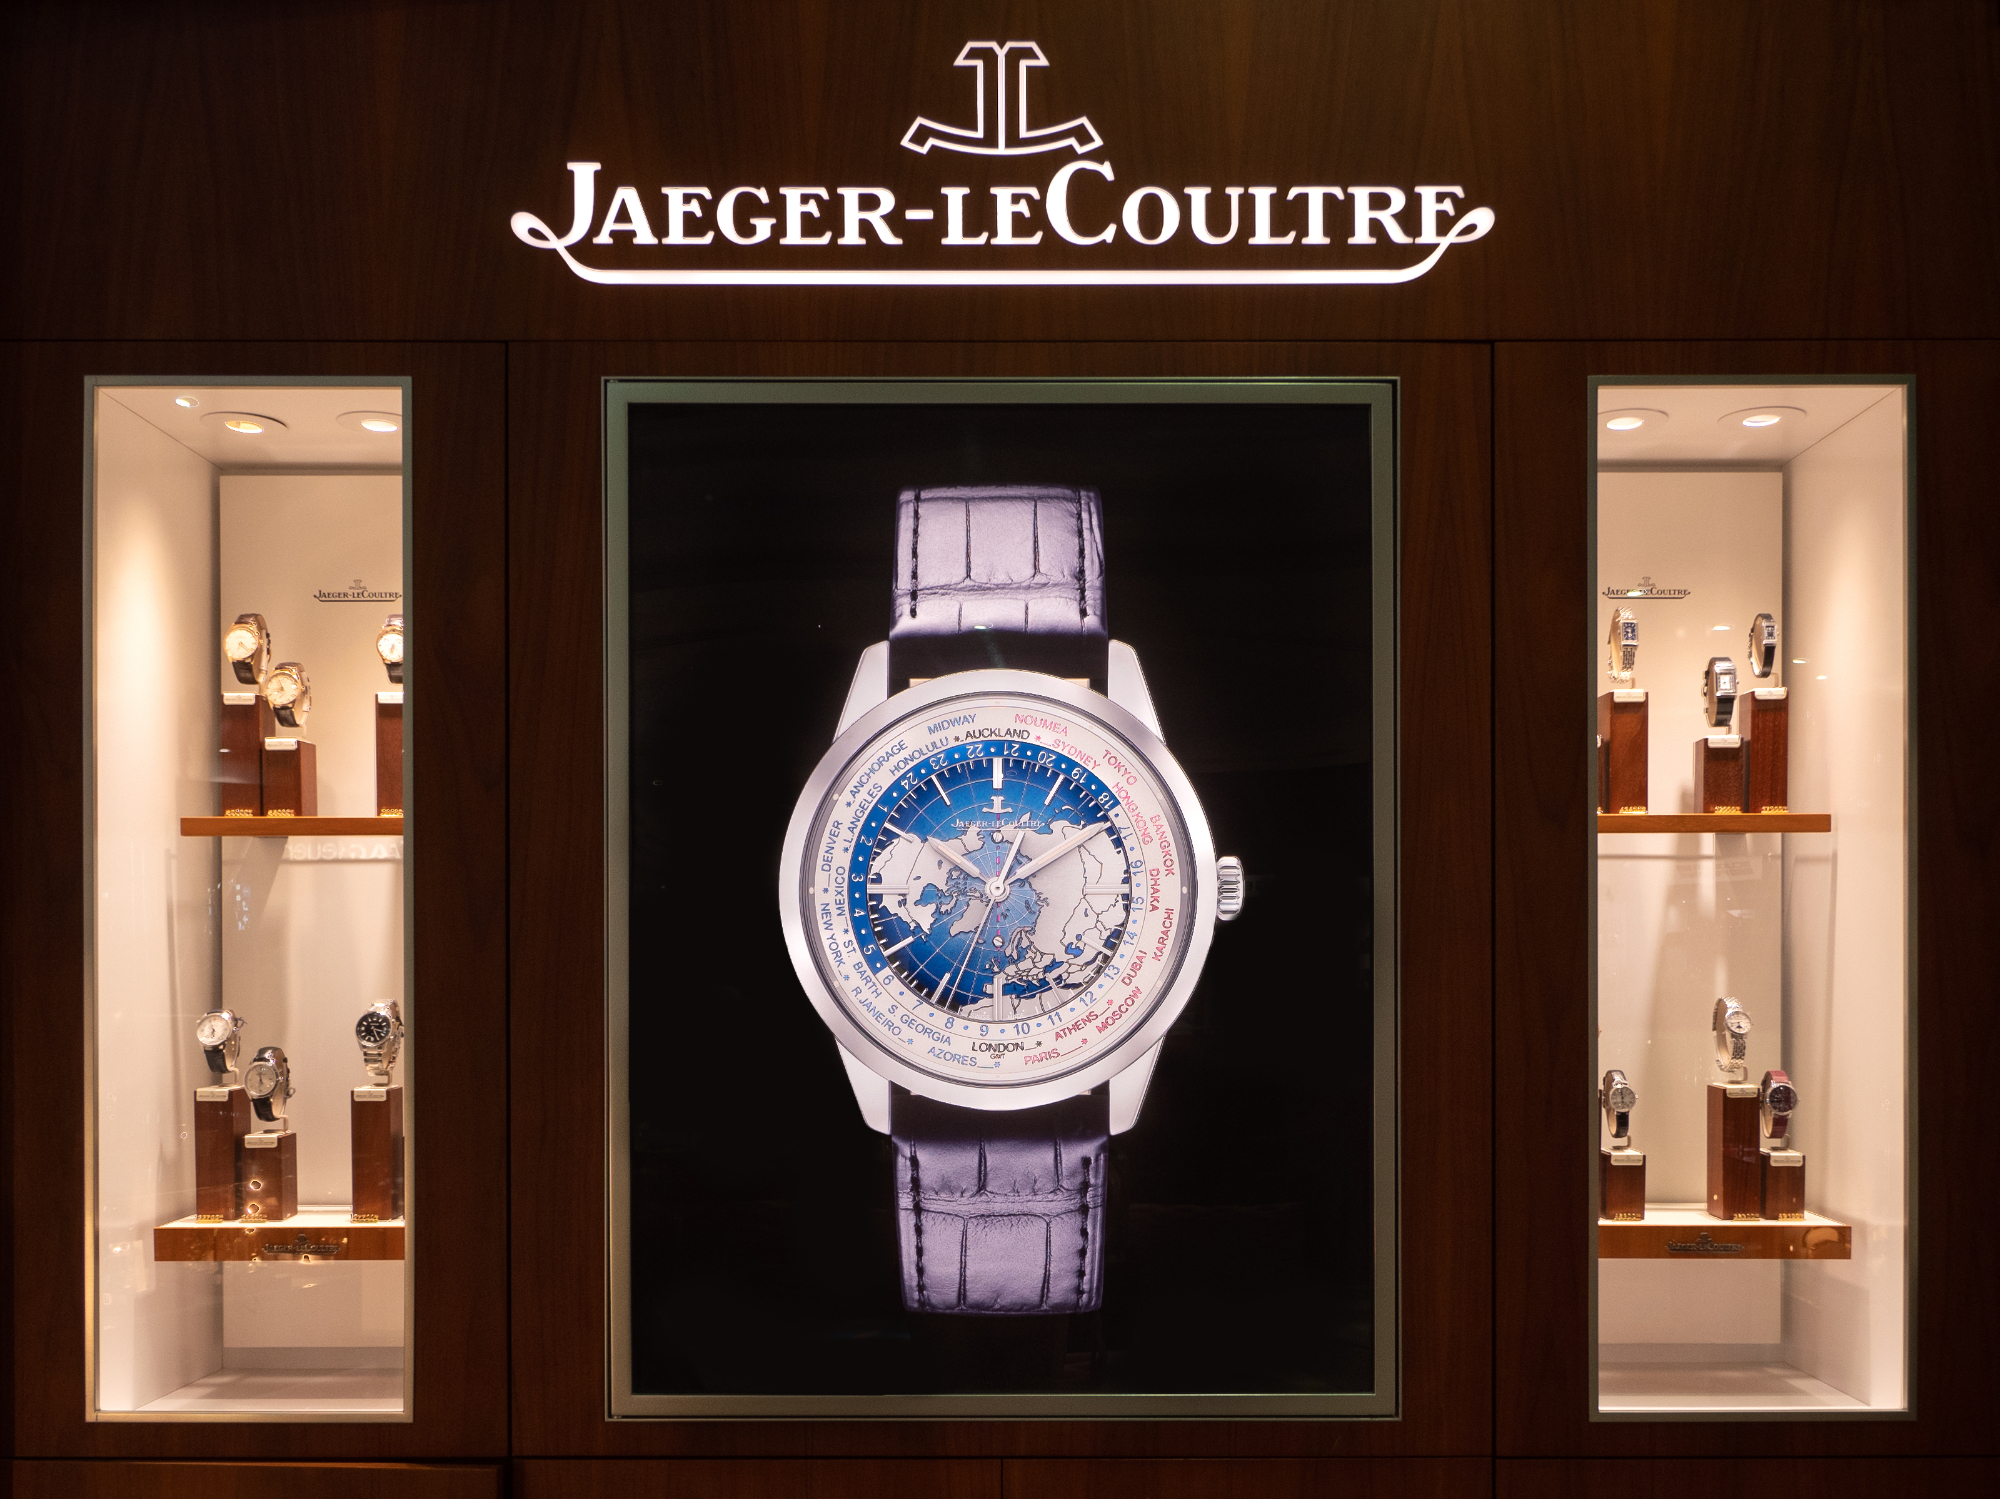 Ročne ure Jaeger-lecoultre so me zaradi svoje raznolikosti zelo navdušile